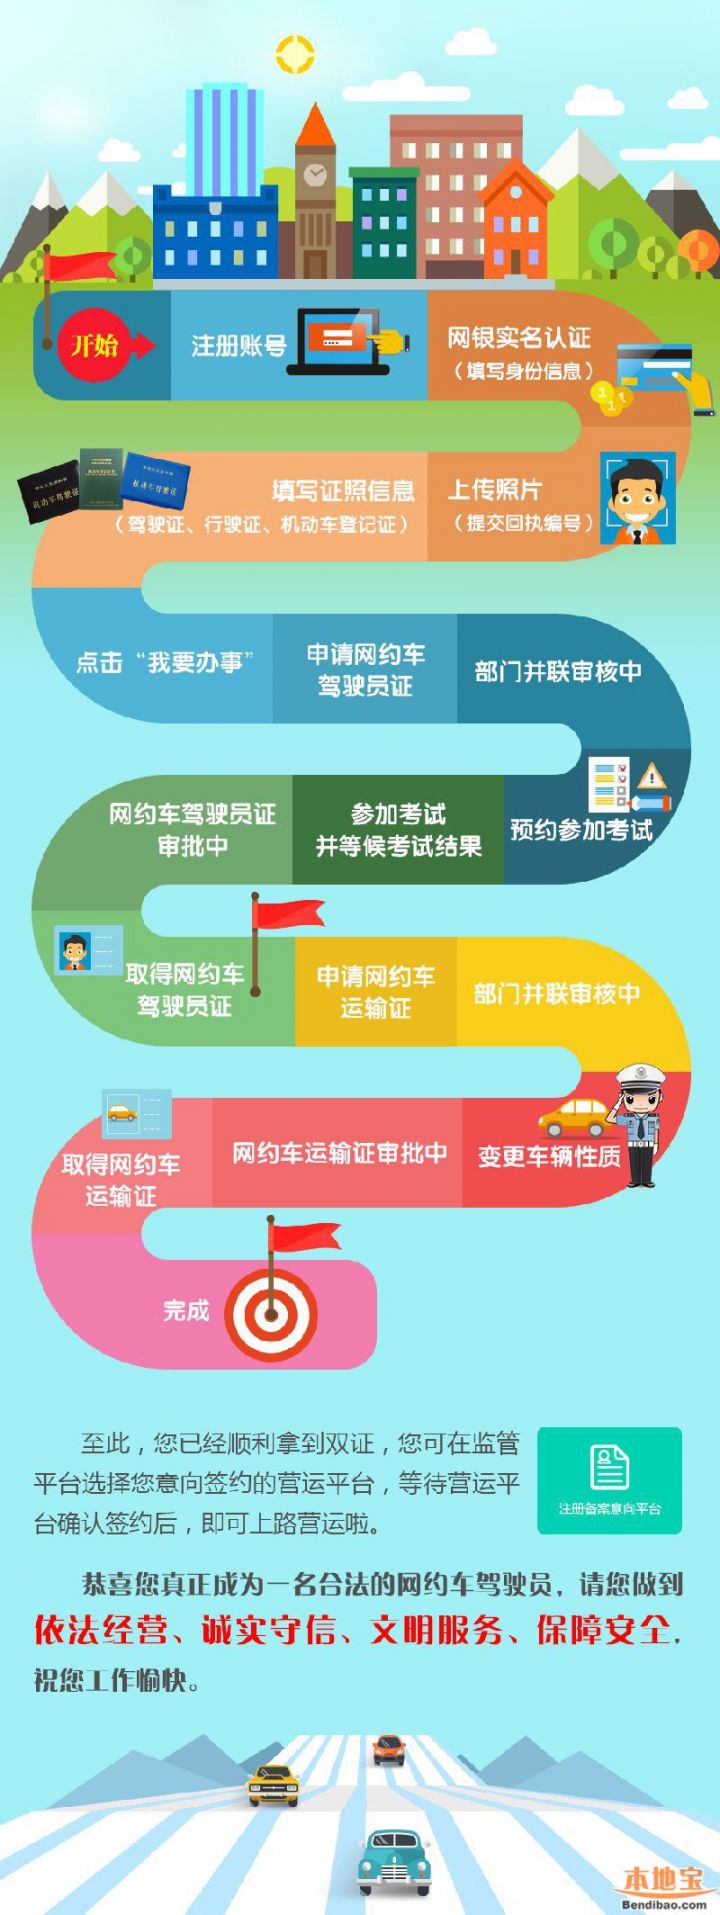 深圳网约车运输证办理材料一览